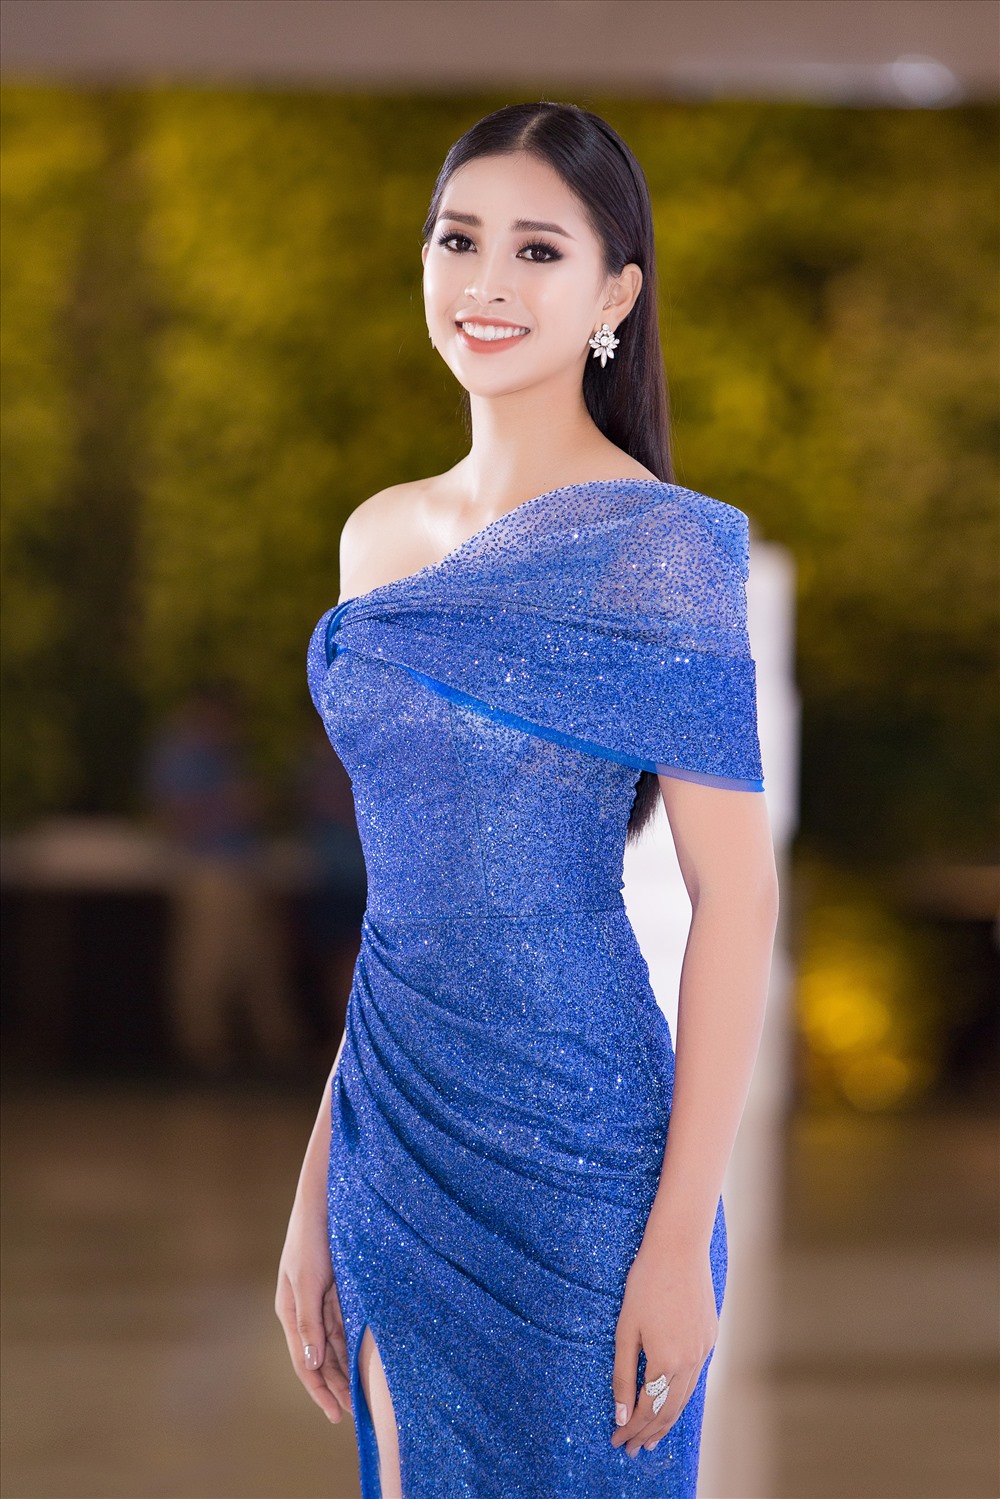 Khác với hình ảnh cá tính tại sự kiện trước đó, Hoa hậu Tiểu Vy xuất hiện với chiếc đầm lệch vai ngọt ngào.